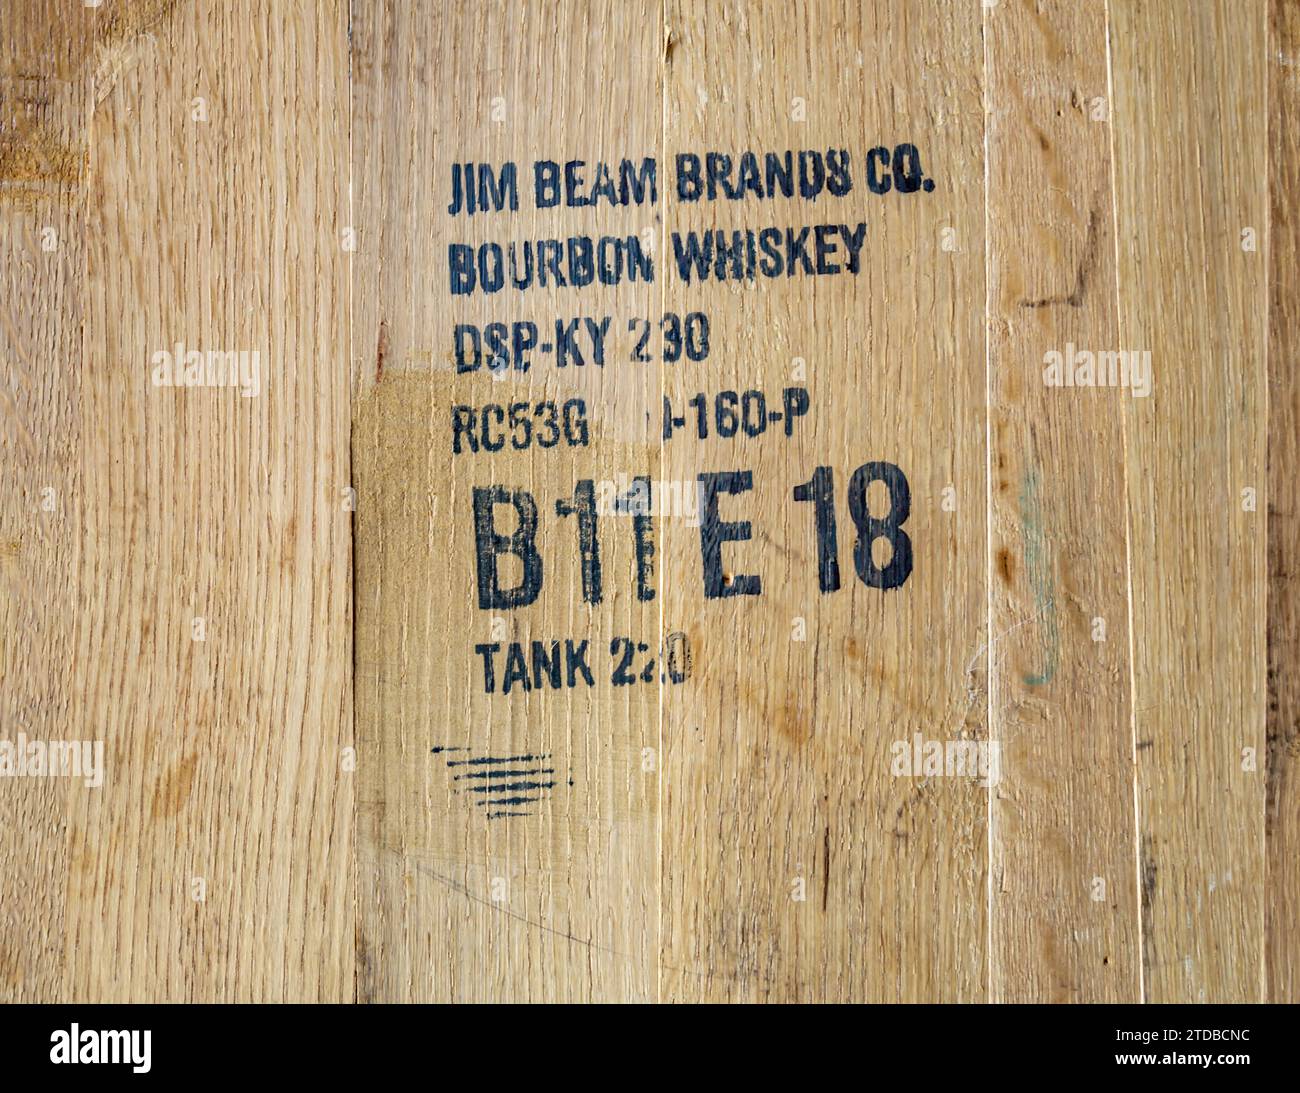 detalle de la imagen de palabras, códigos y números en un barril de roble jim beam Foto de stock